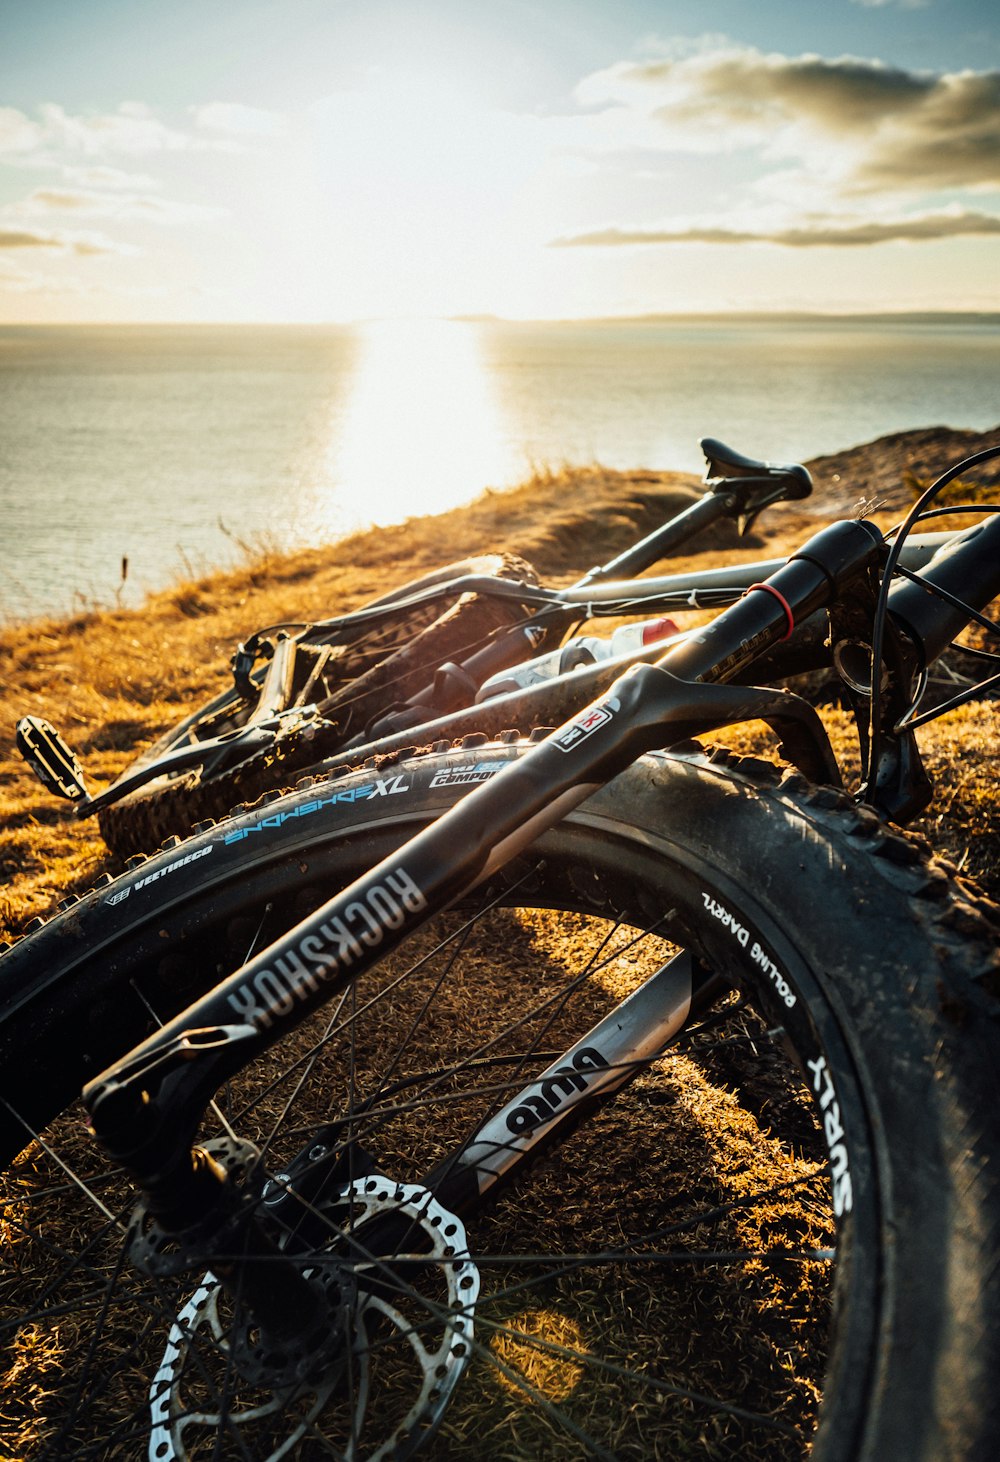 bicicleta preta na grama marrom perto do corpo de água durante o dia